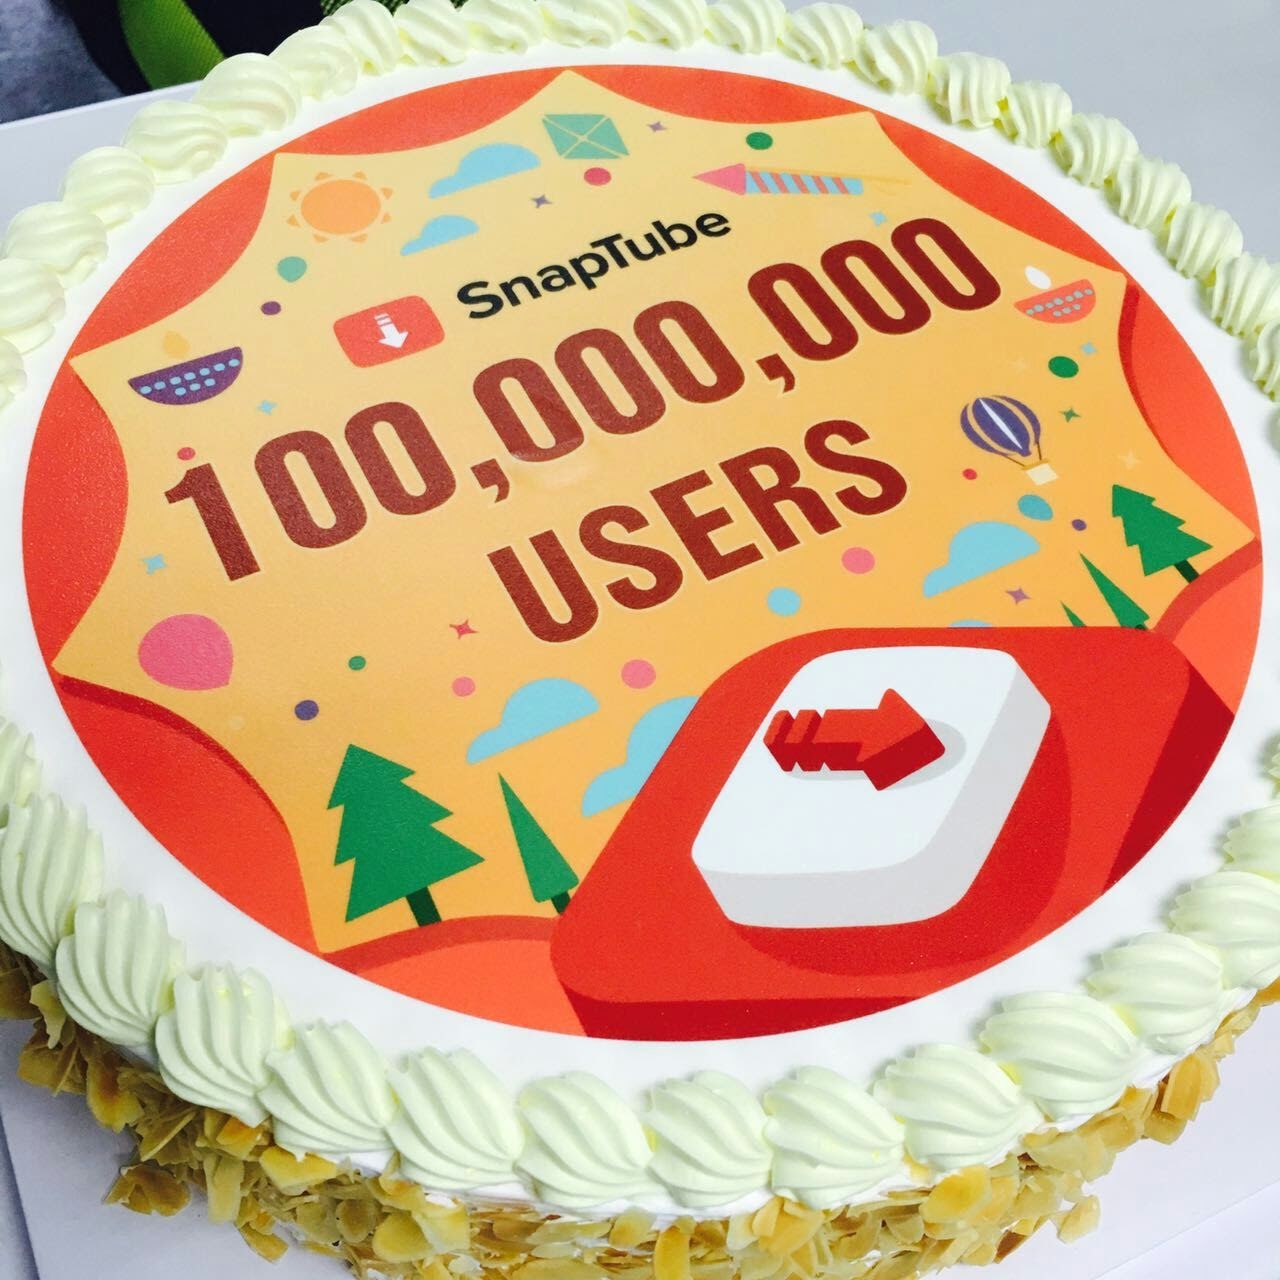 Snaptube 10 Million Users Celebration Cake